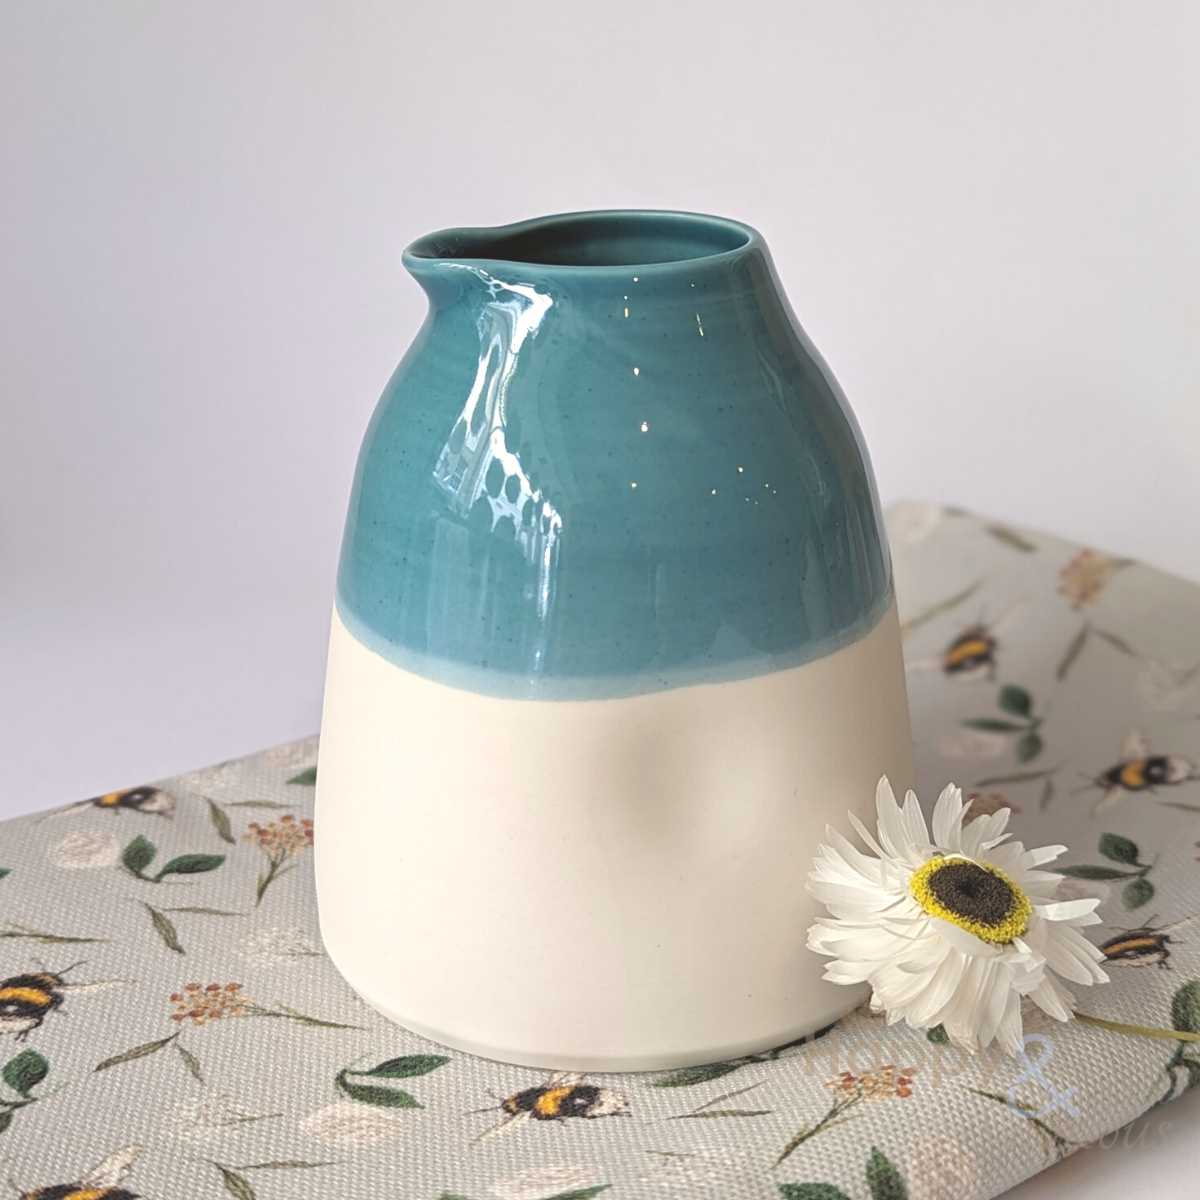 Aqua blue porcelain collared jug